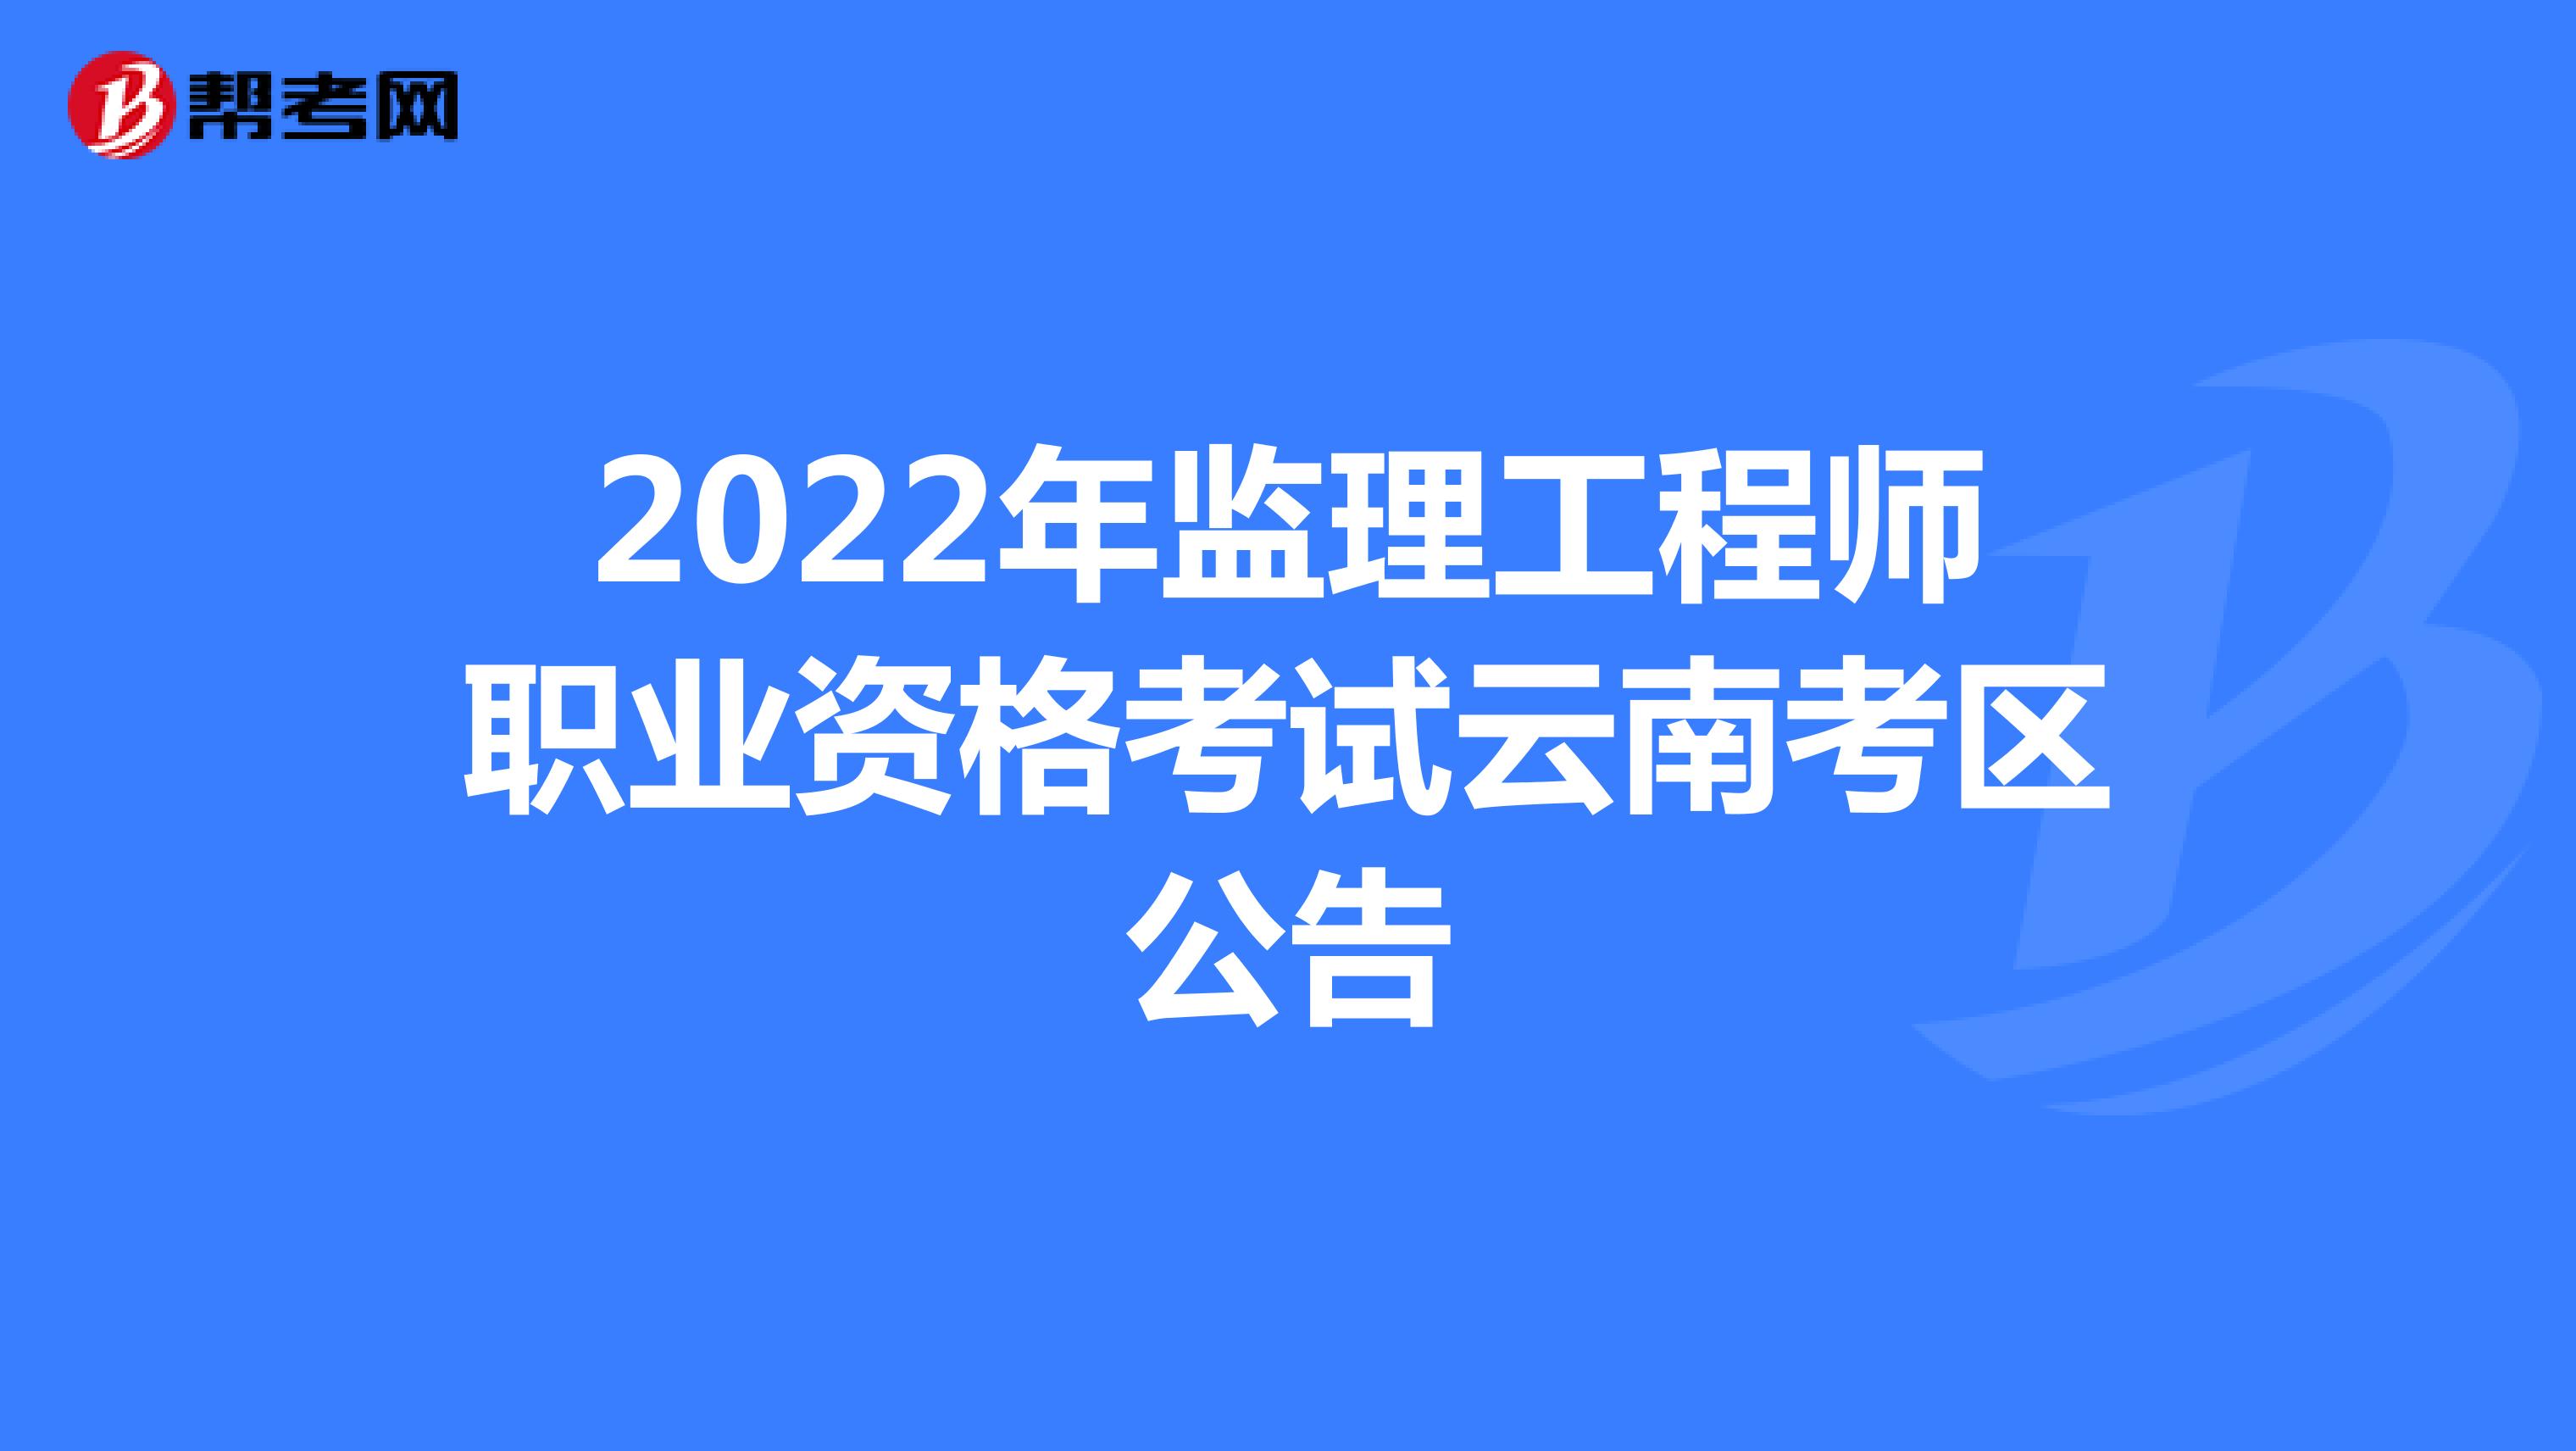 2022年監理工程師職業資格考試云南考區公告